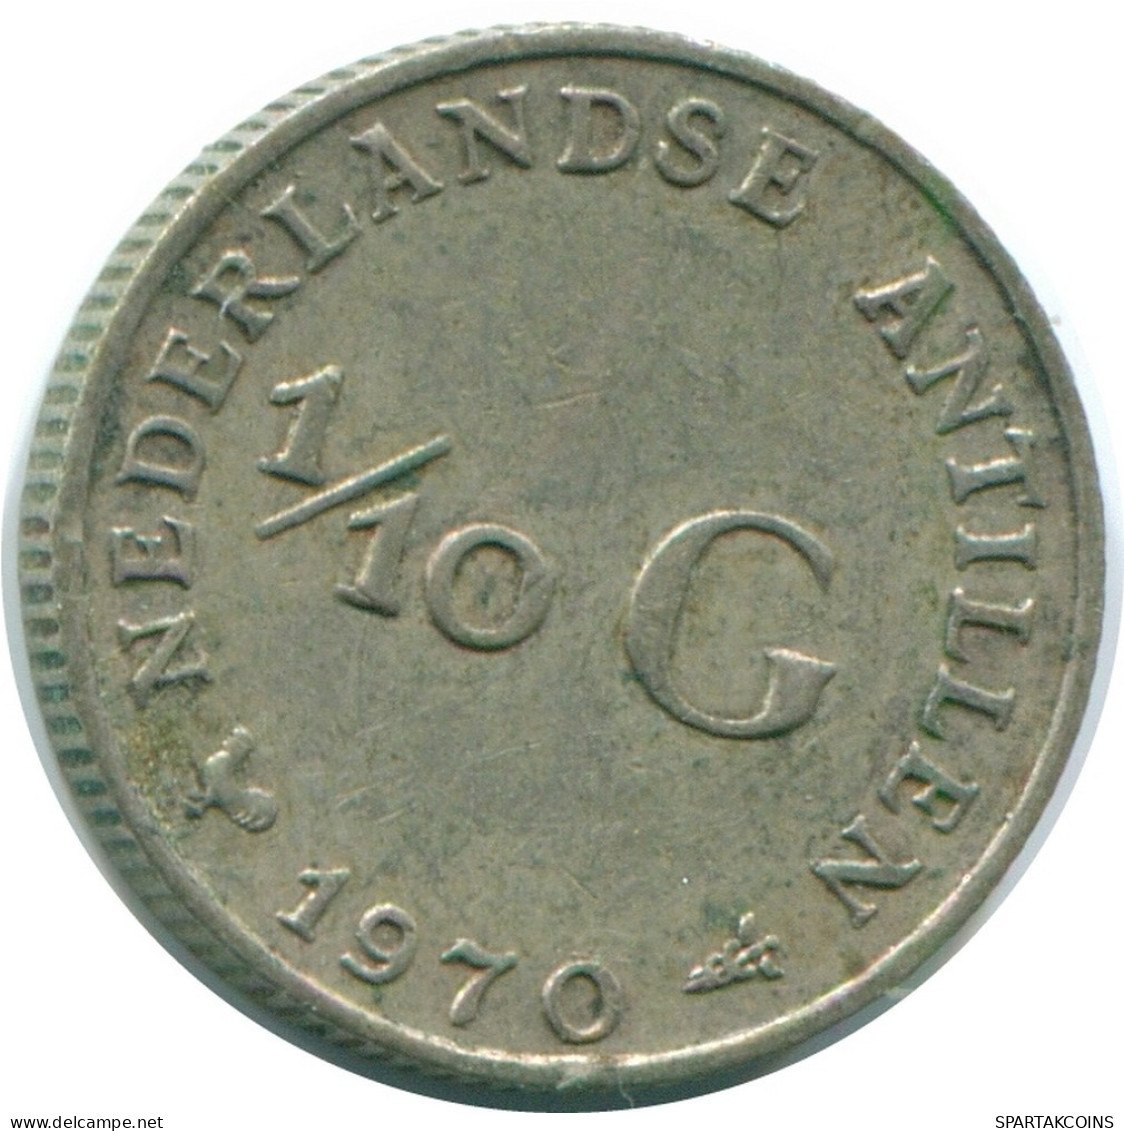 1/10 GULDEN 1970 NIEDERLÄNDISCHE ANTILLEN SILBER Koloniale Münze #NL13113.3.D.A - Antilles Néerlandaises